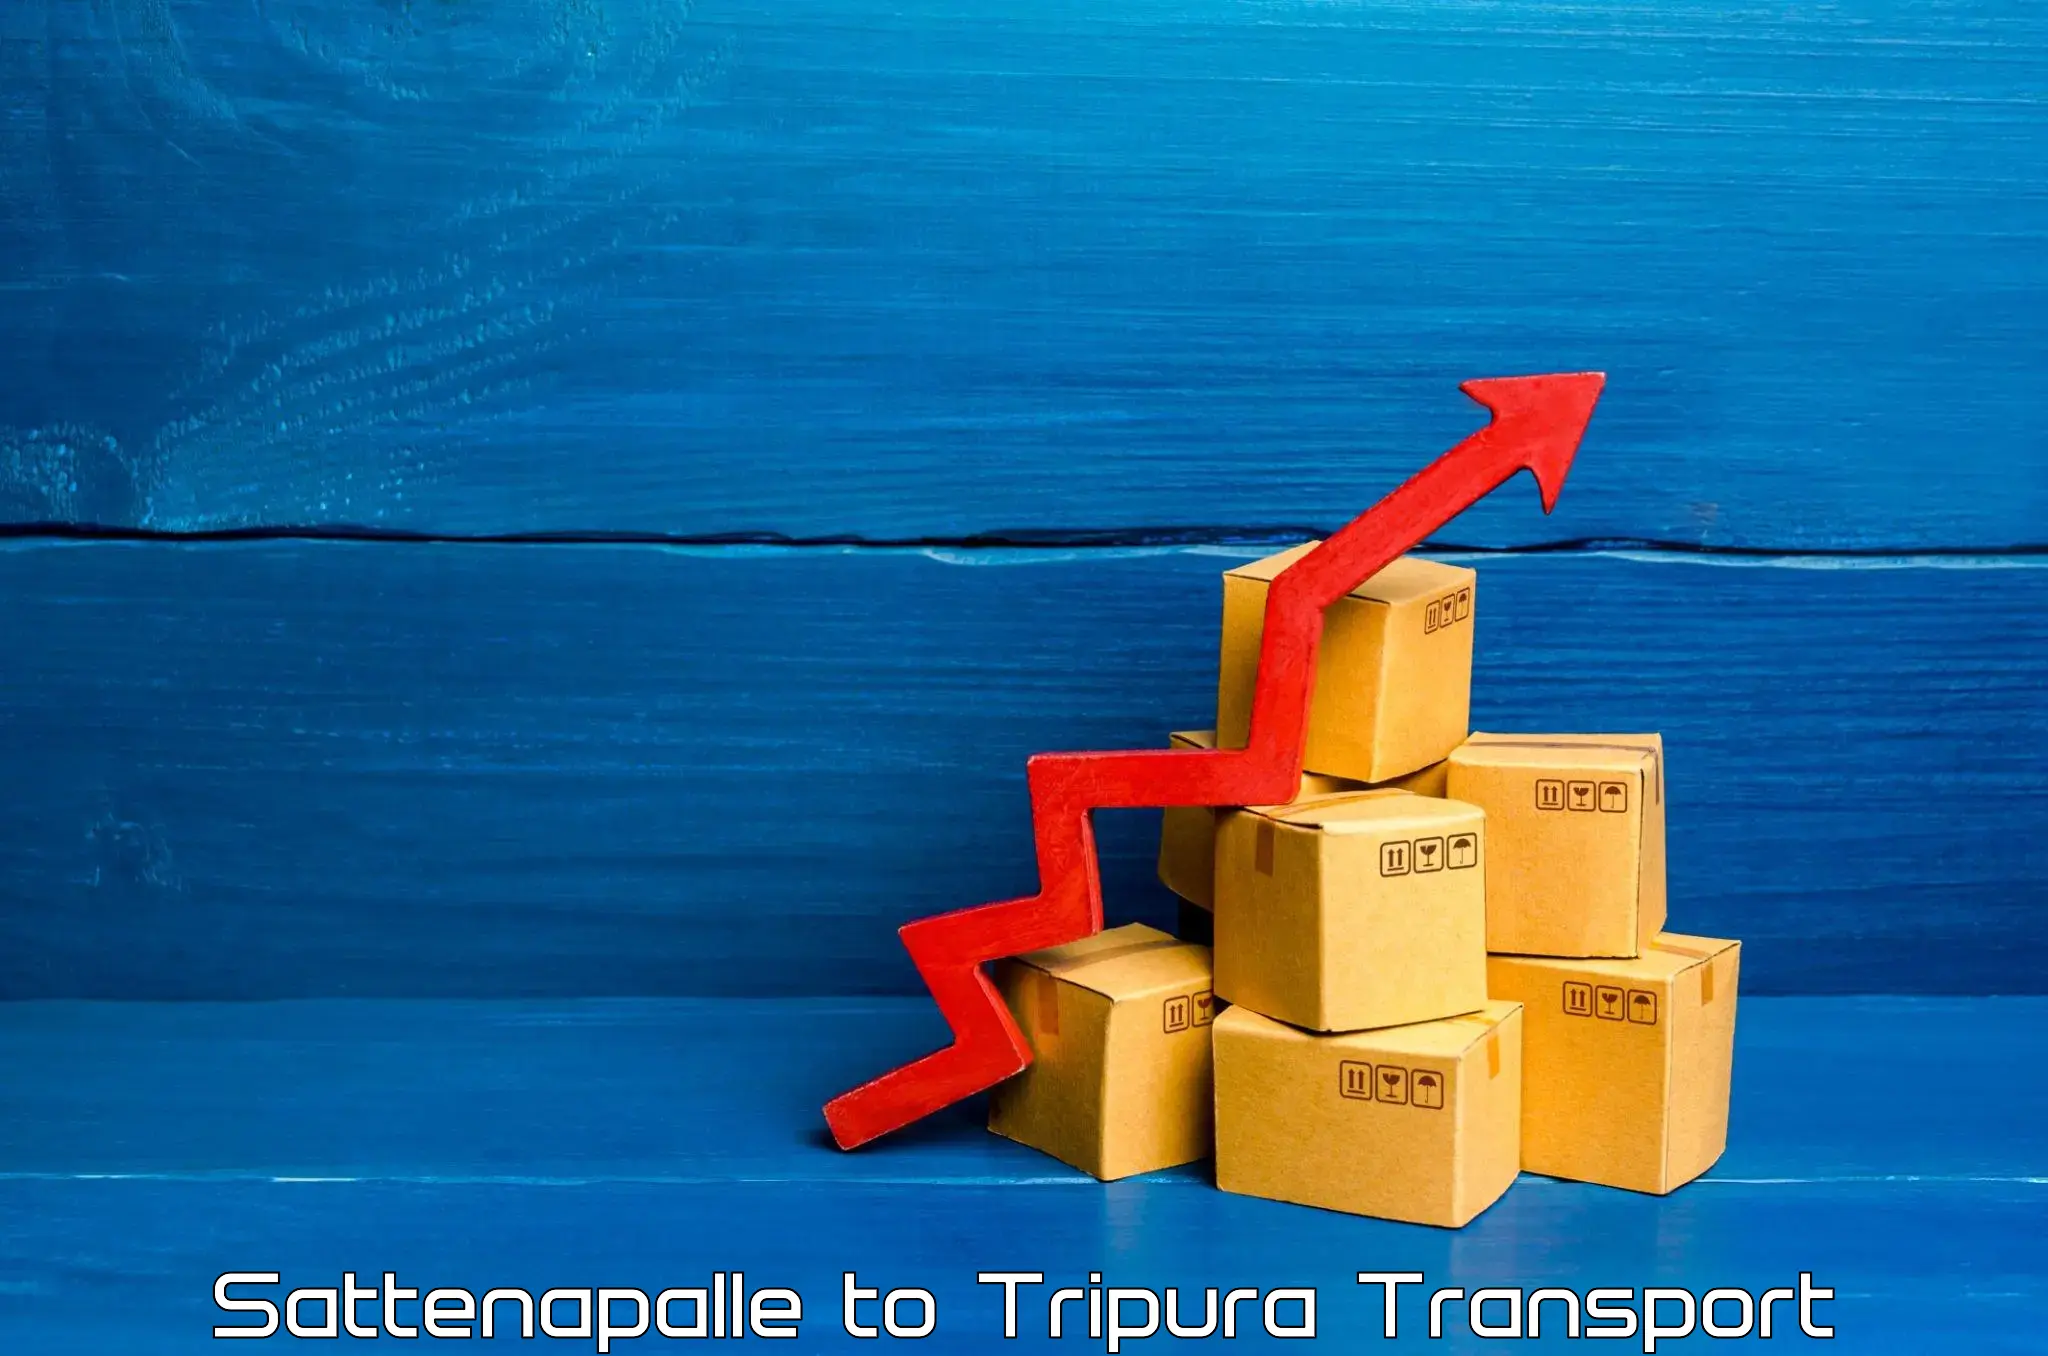 Road transport services Sattenapalle to IIIT Agartala